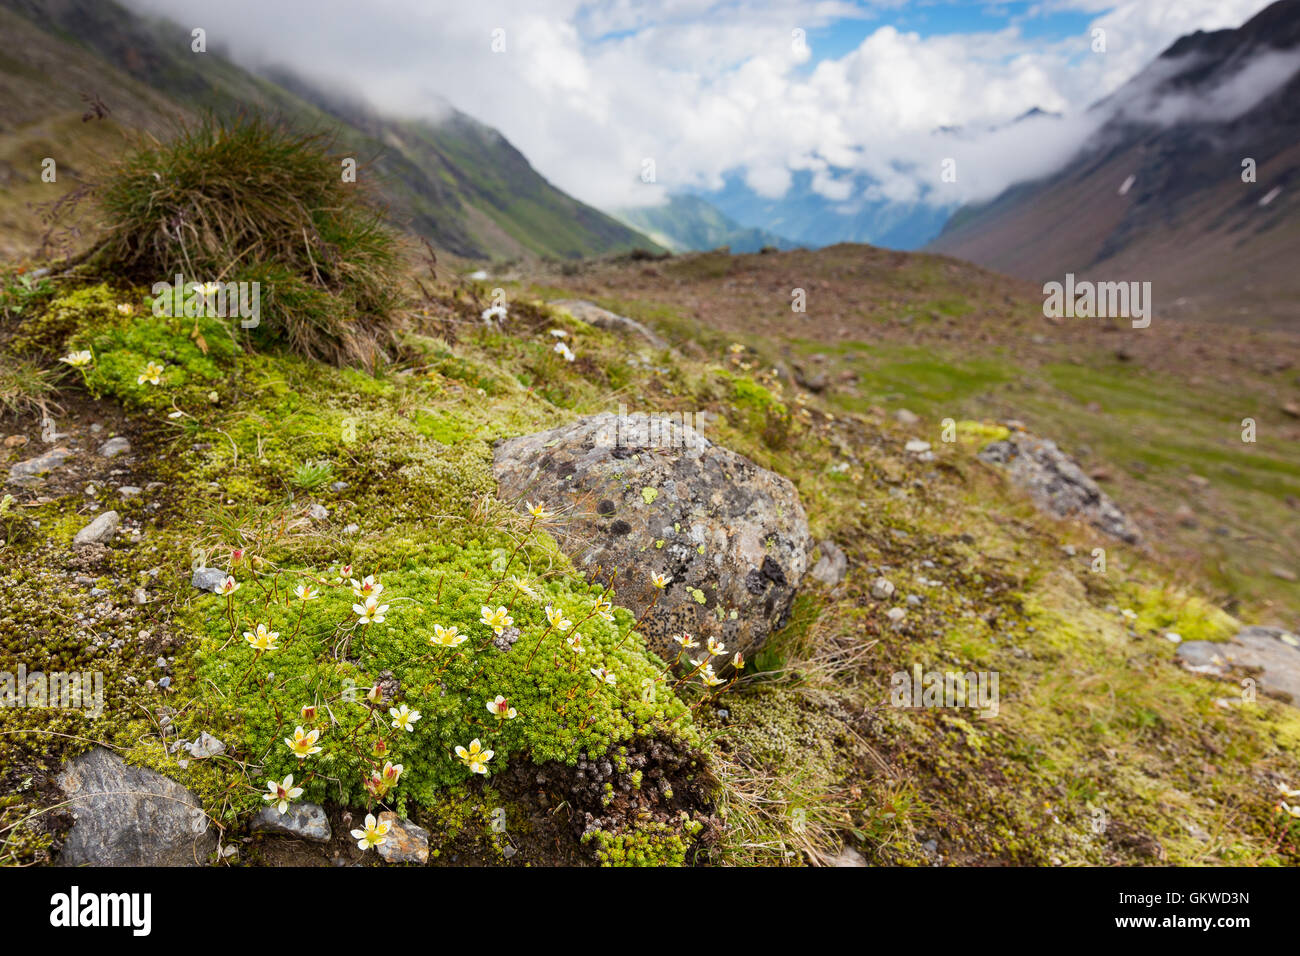 Saxifraga alpine plant. Stubaier Alpen. Stubaital. Alpi dello Stubai. Austrian Alps. Europe. Stock Photo